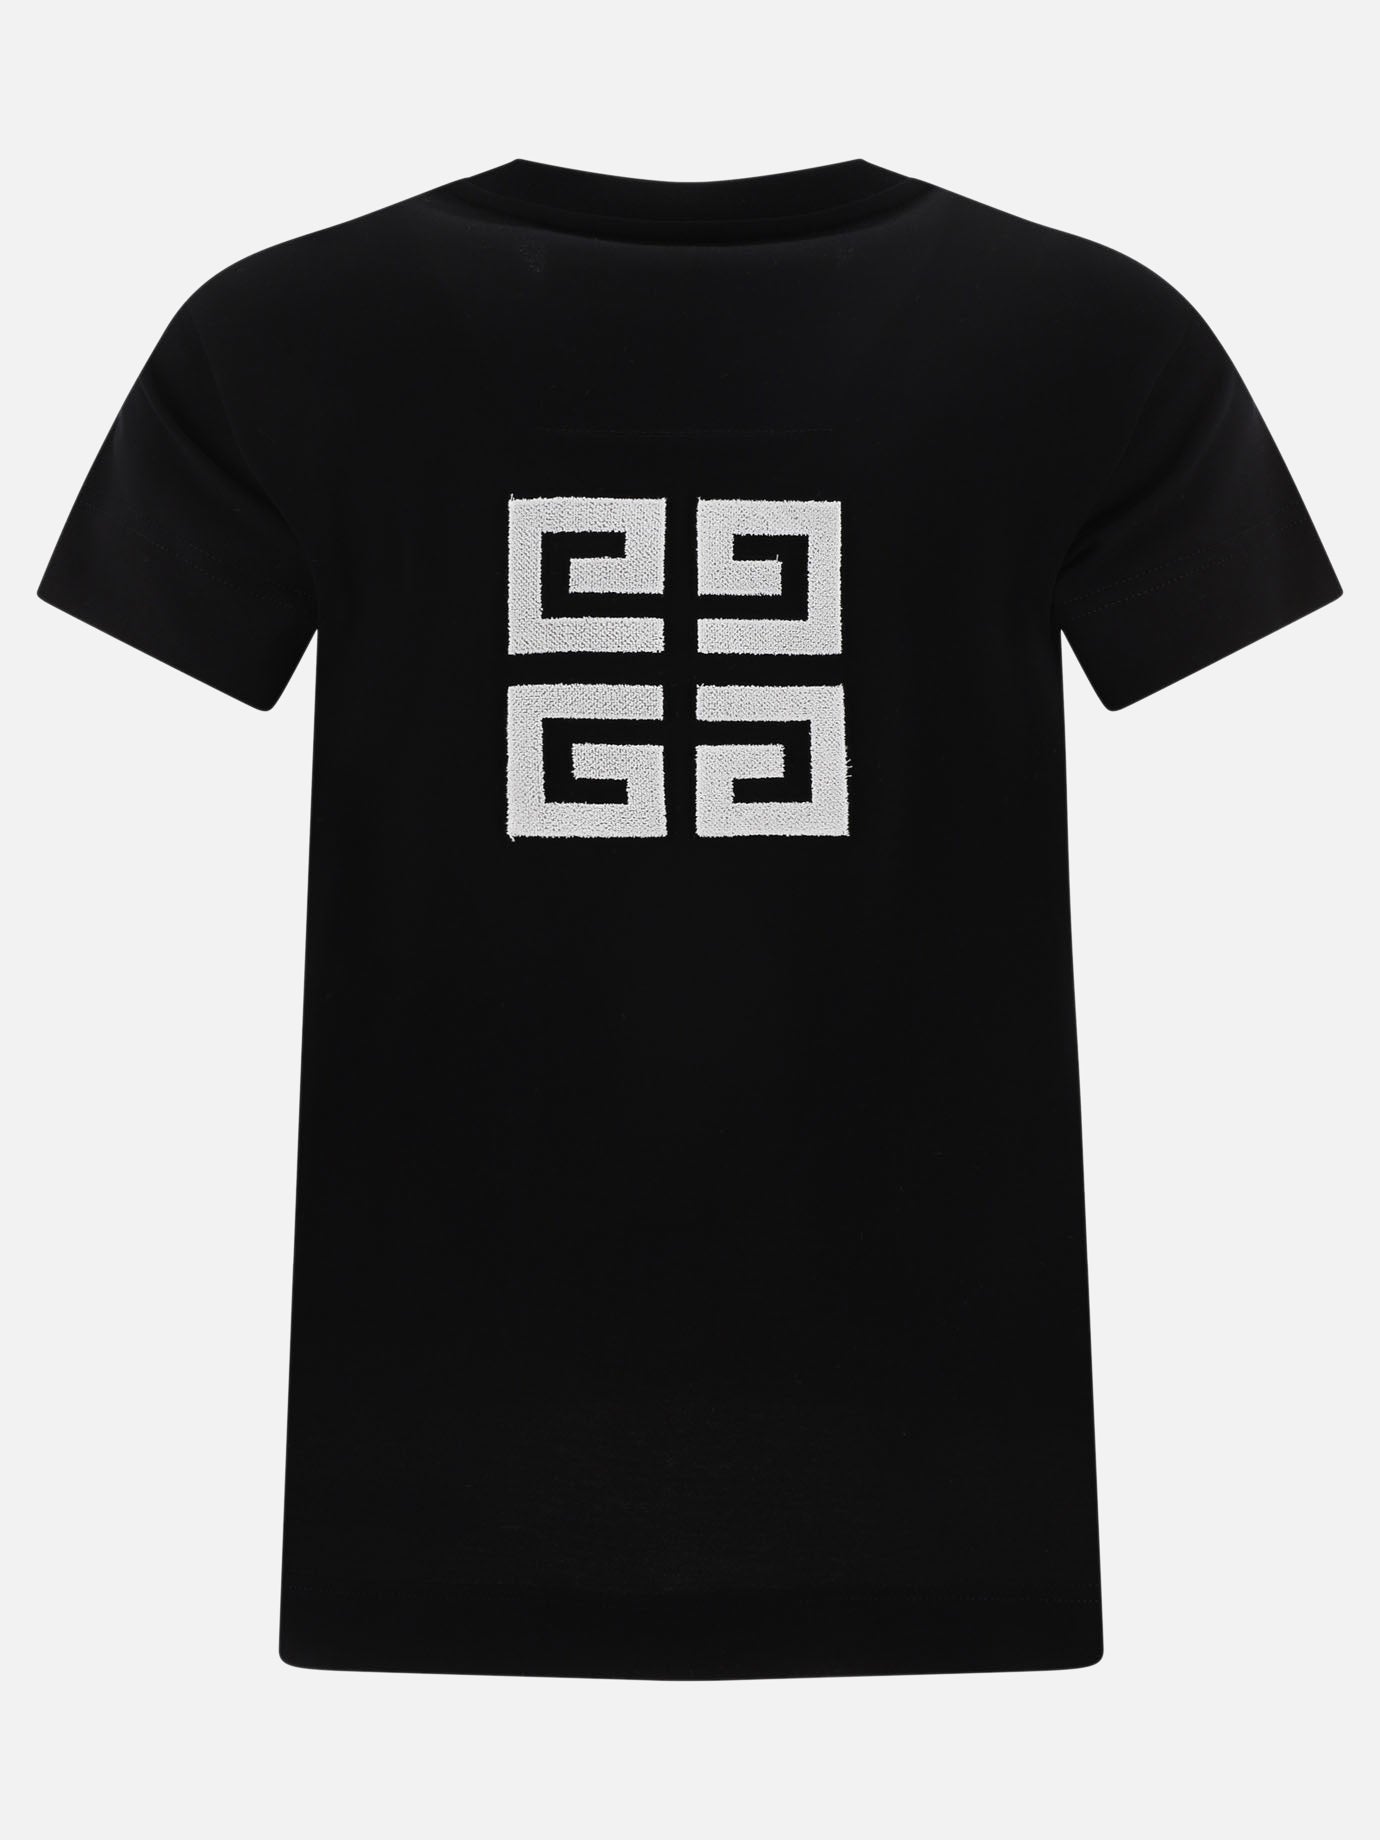 "GIVENCHY 4G" t-shirt